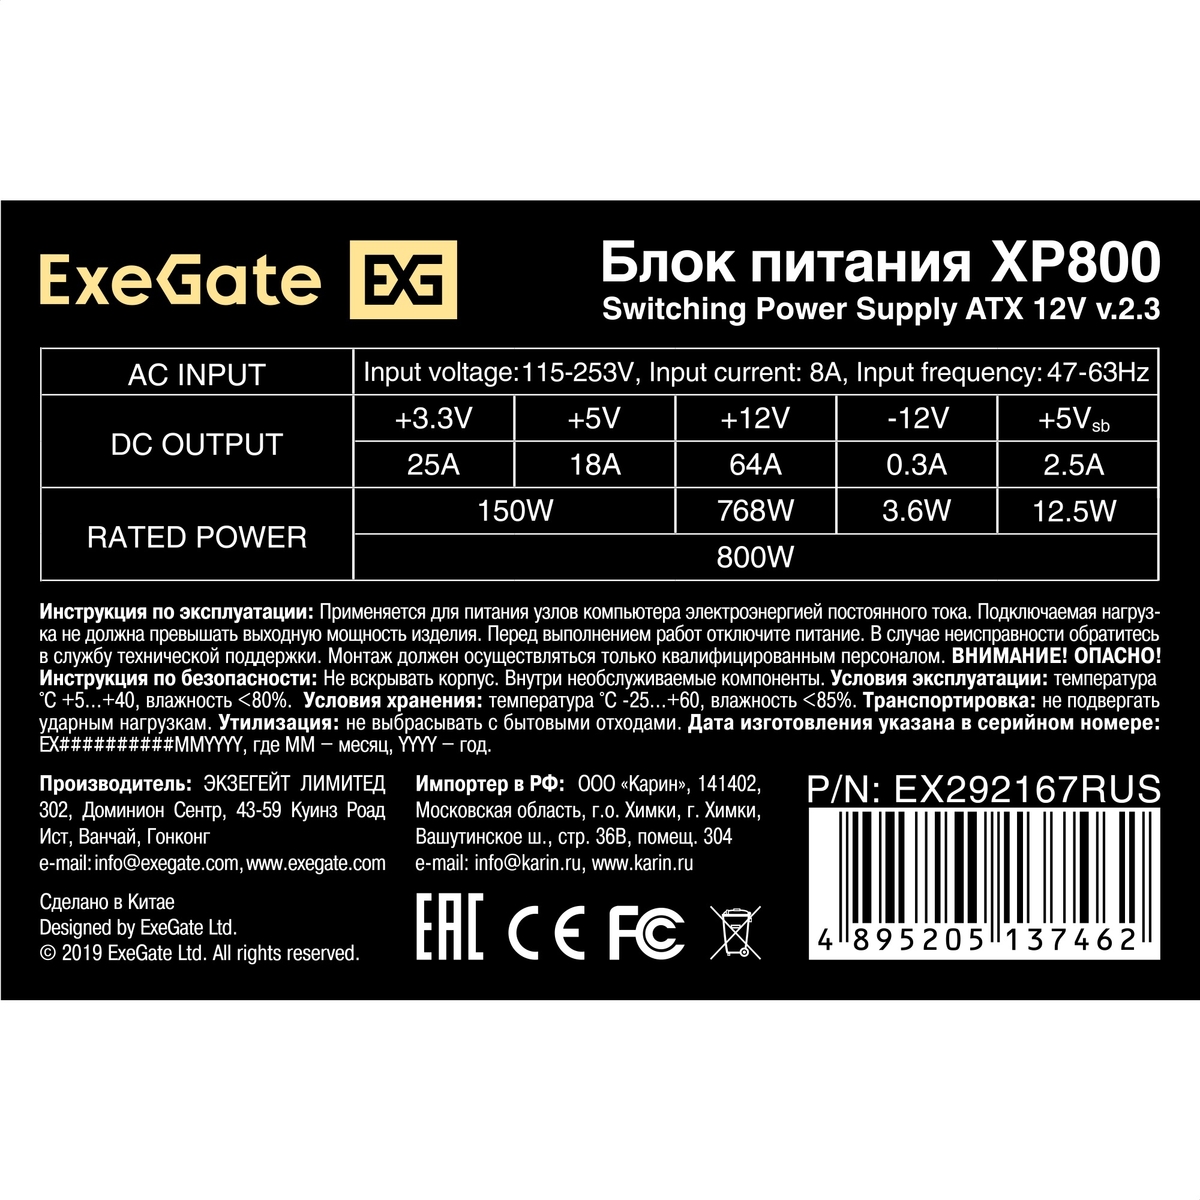   800W ExeGate XP800